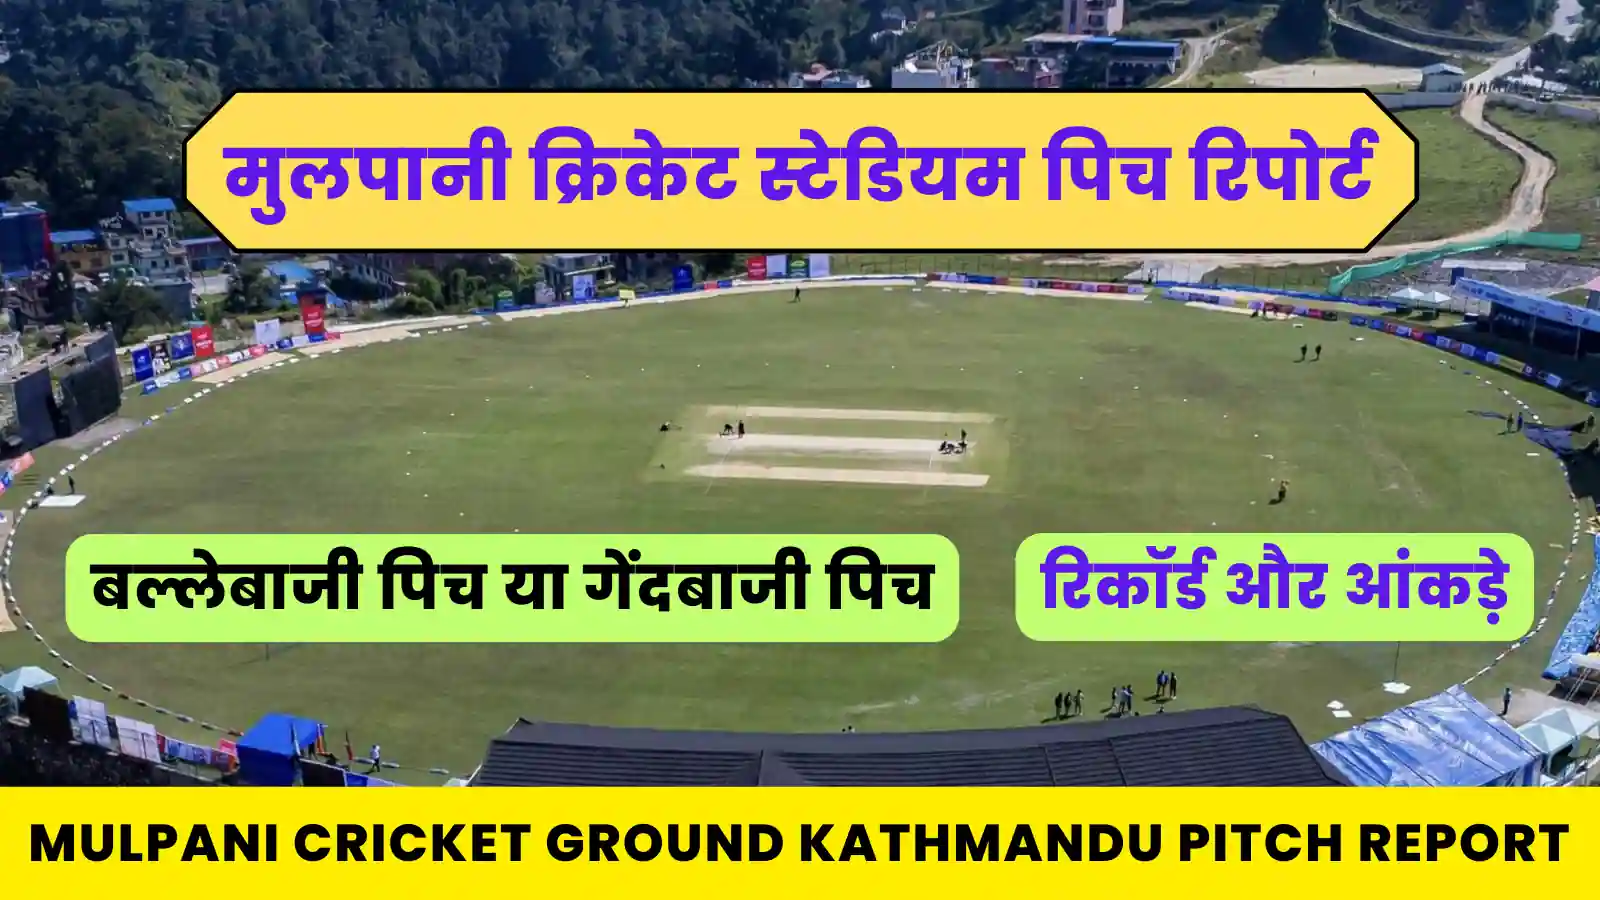 Mulpani Cricket Ground Kathmandu Pitch Report